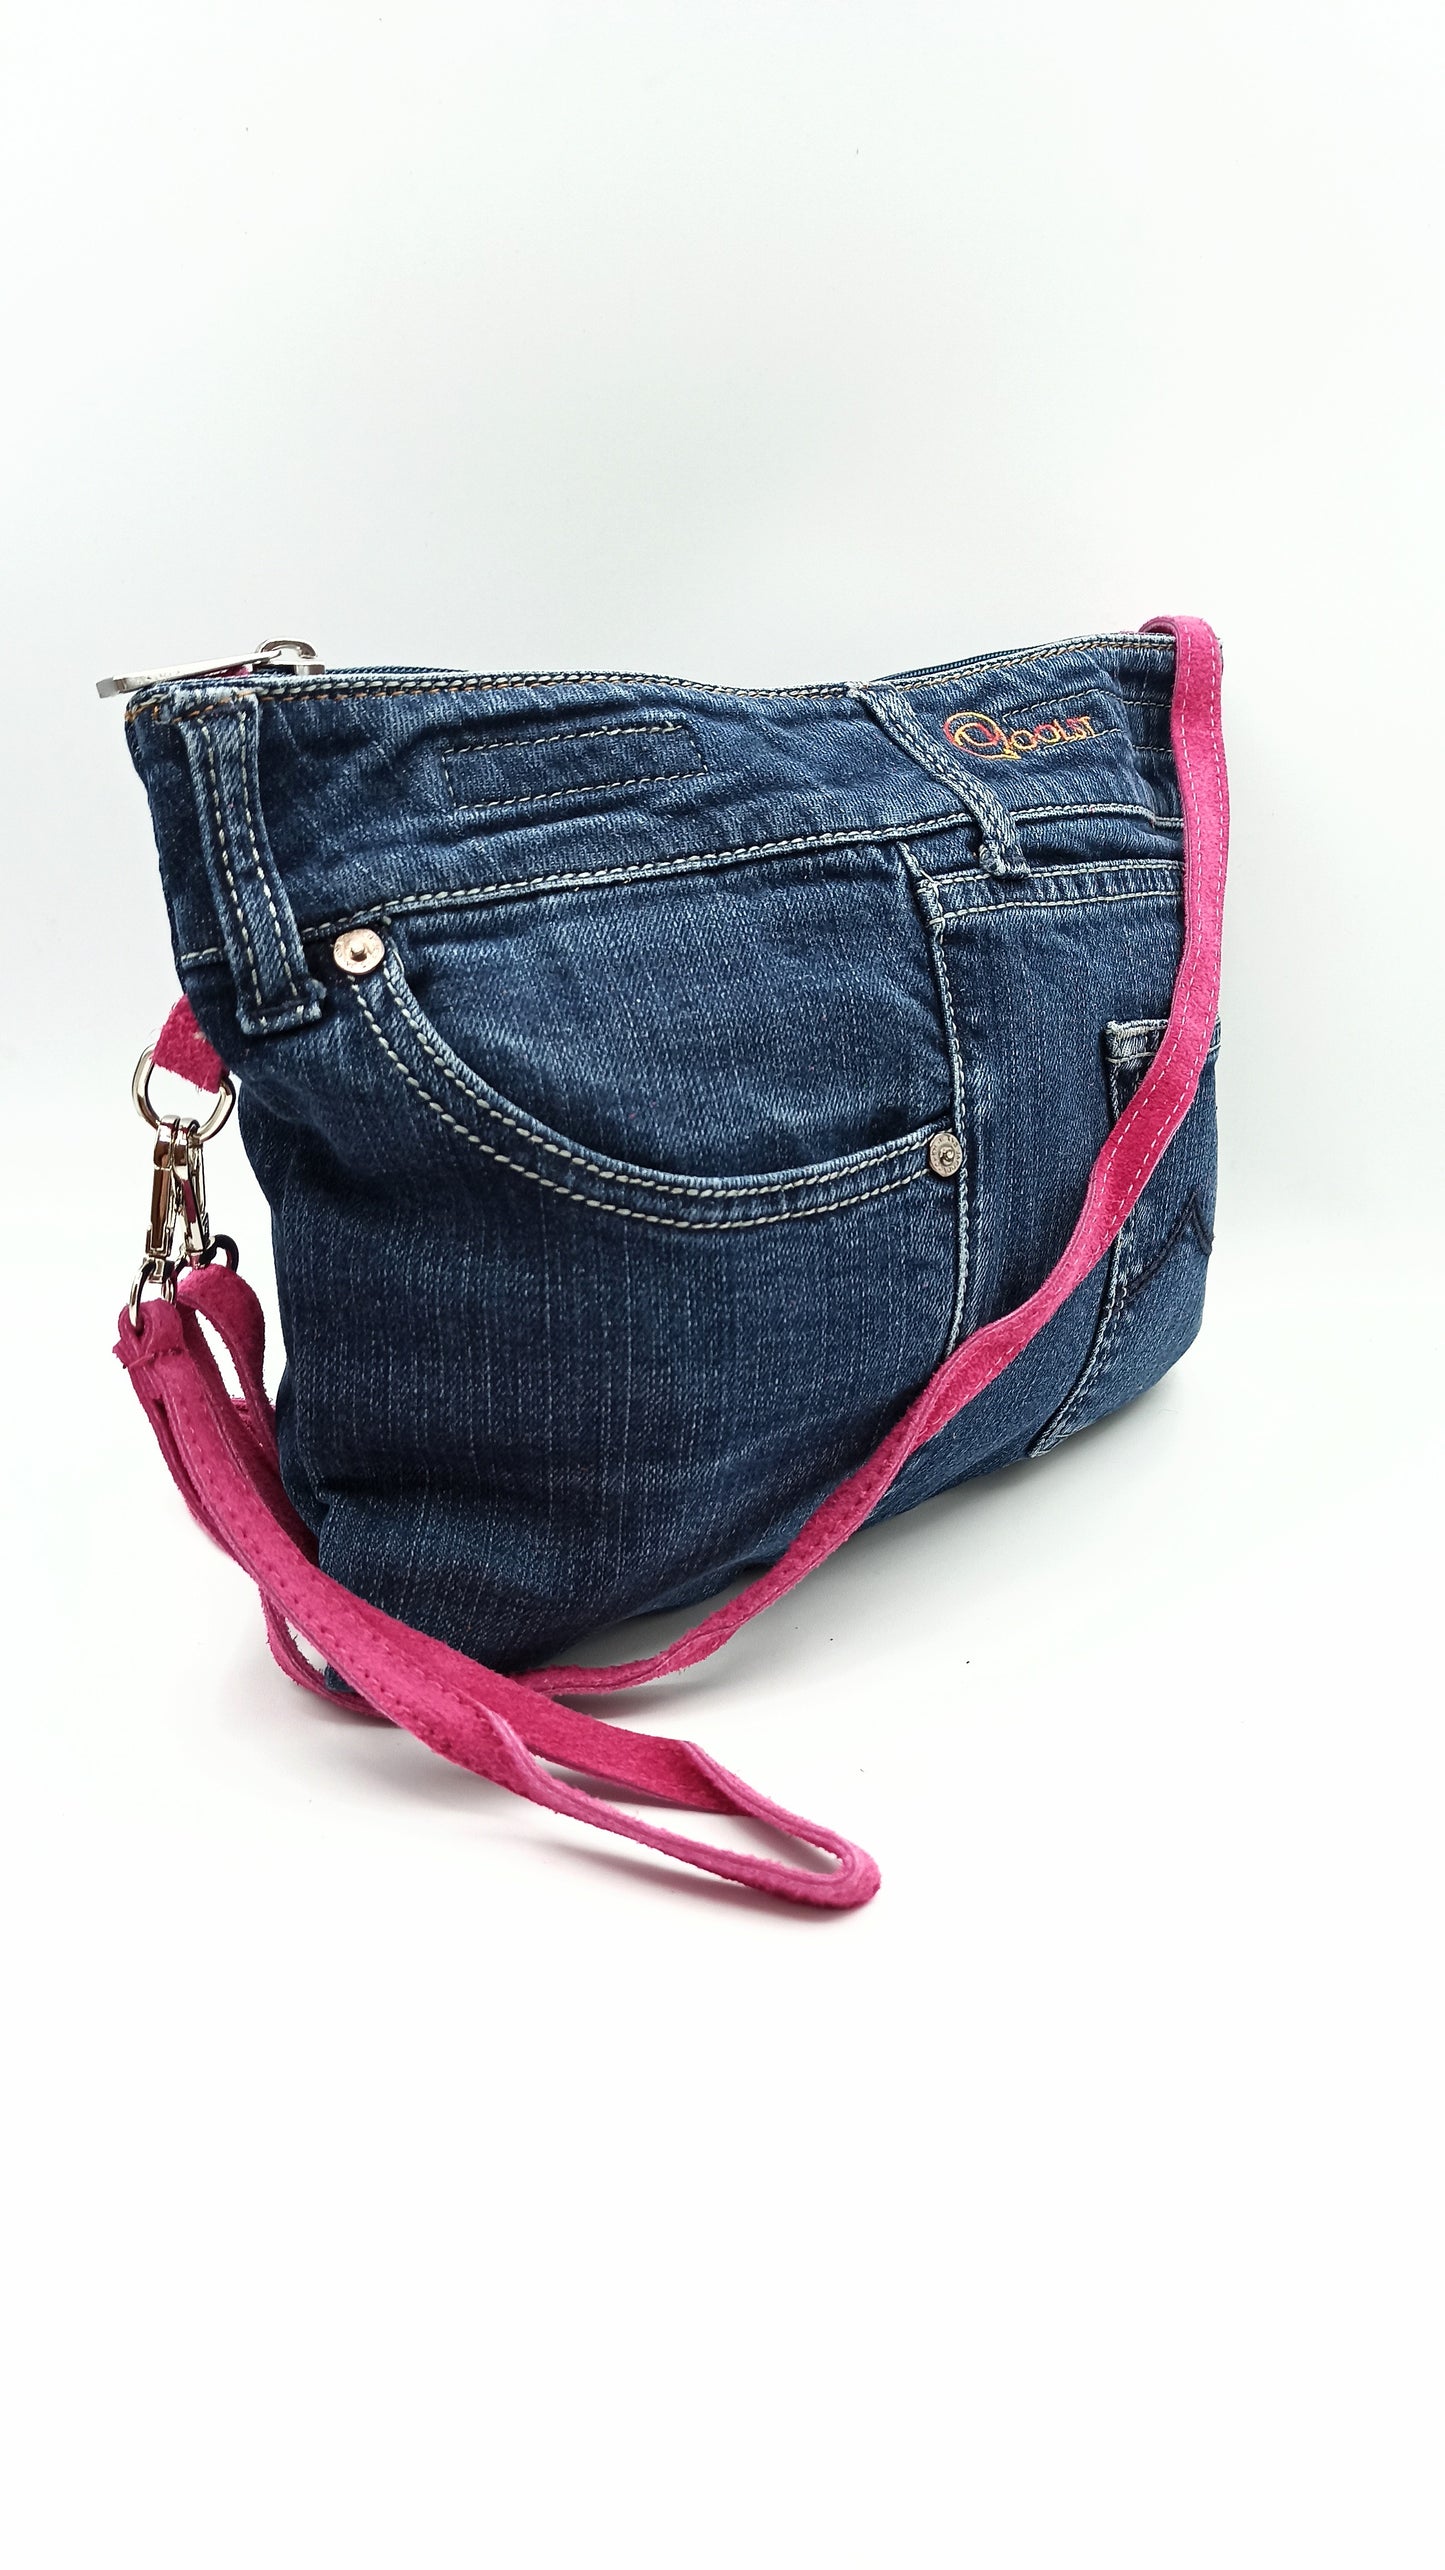 Qoolst Jeans sac en jean pour femmes et hommes, sac à main et sac à bandoulière